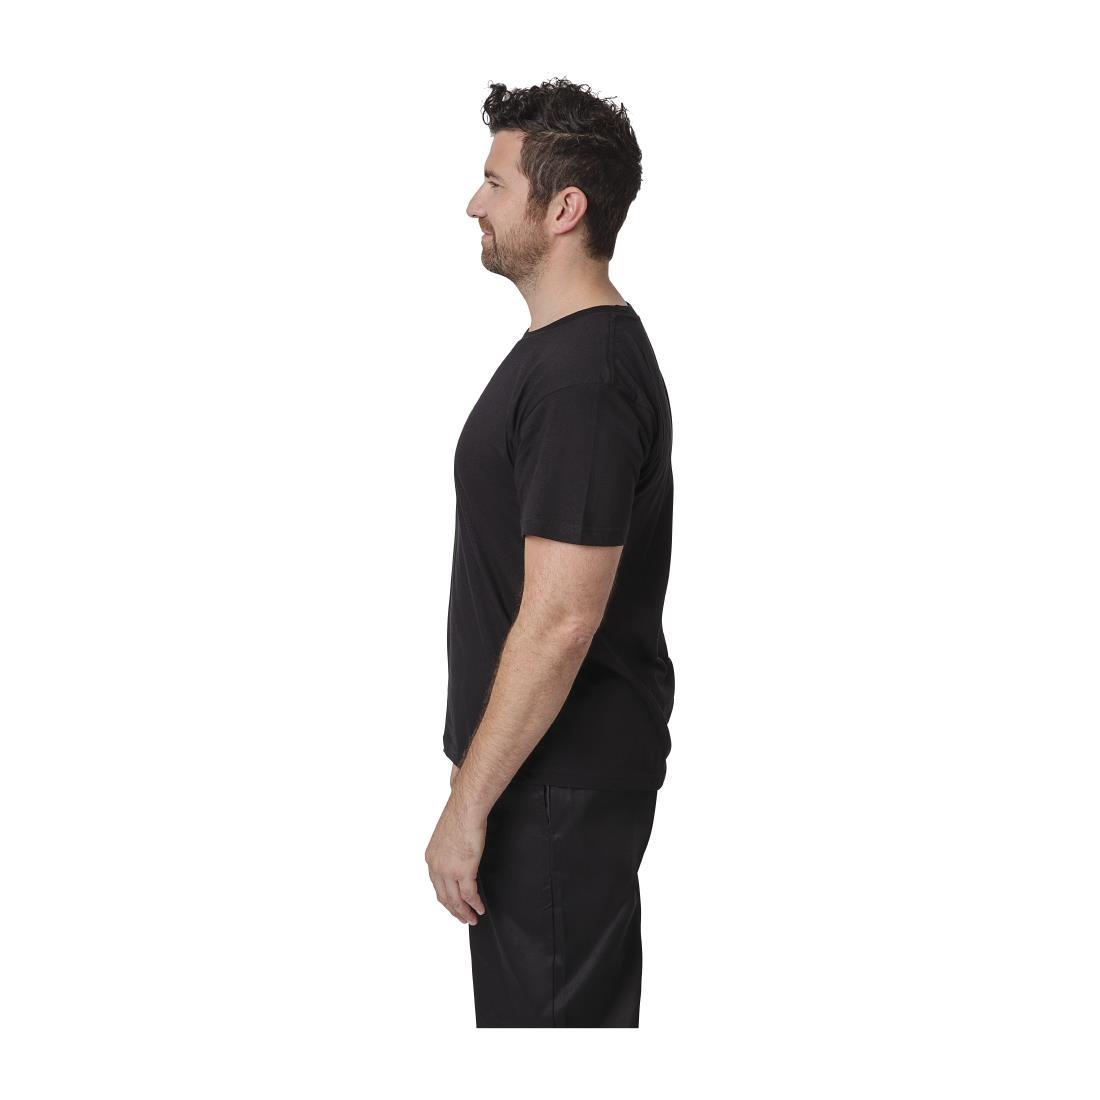 Unisex Chef T-Shirt Black L - A295-L  - 4